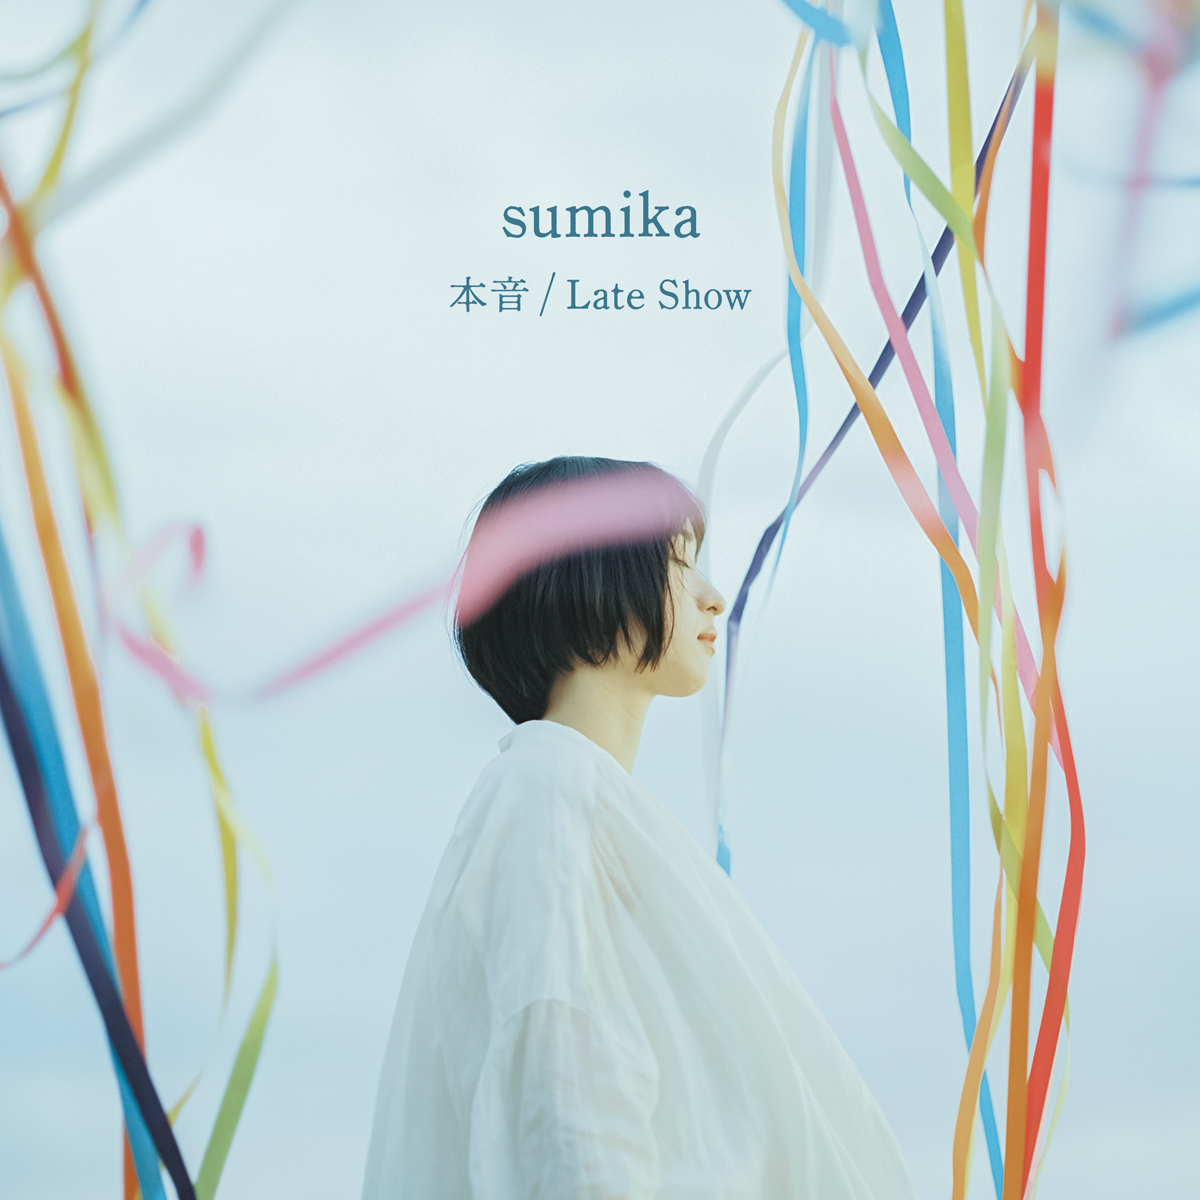 Sumika 1月6日発売 本音 Late Show のティザー映像を公開 株式会社ソニー ミュージックレーベルズのプレスリリース